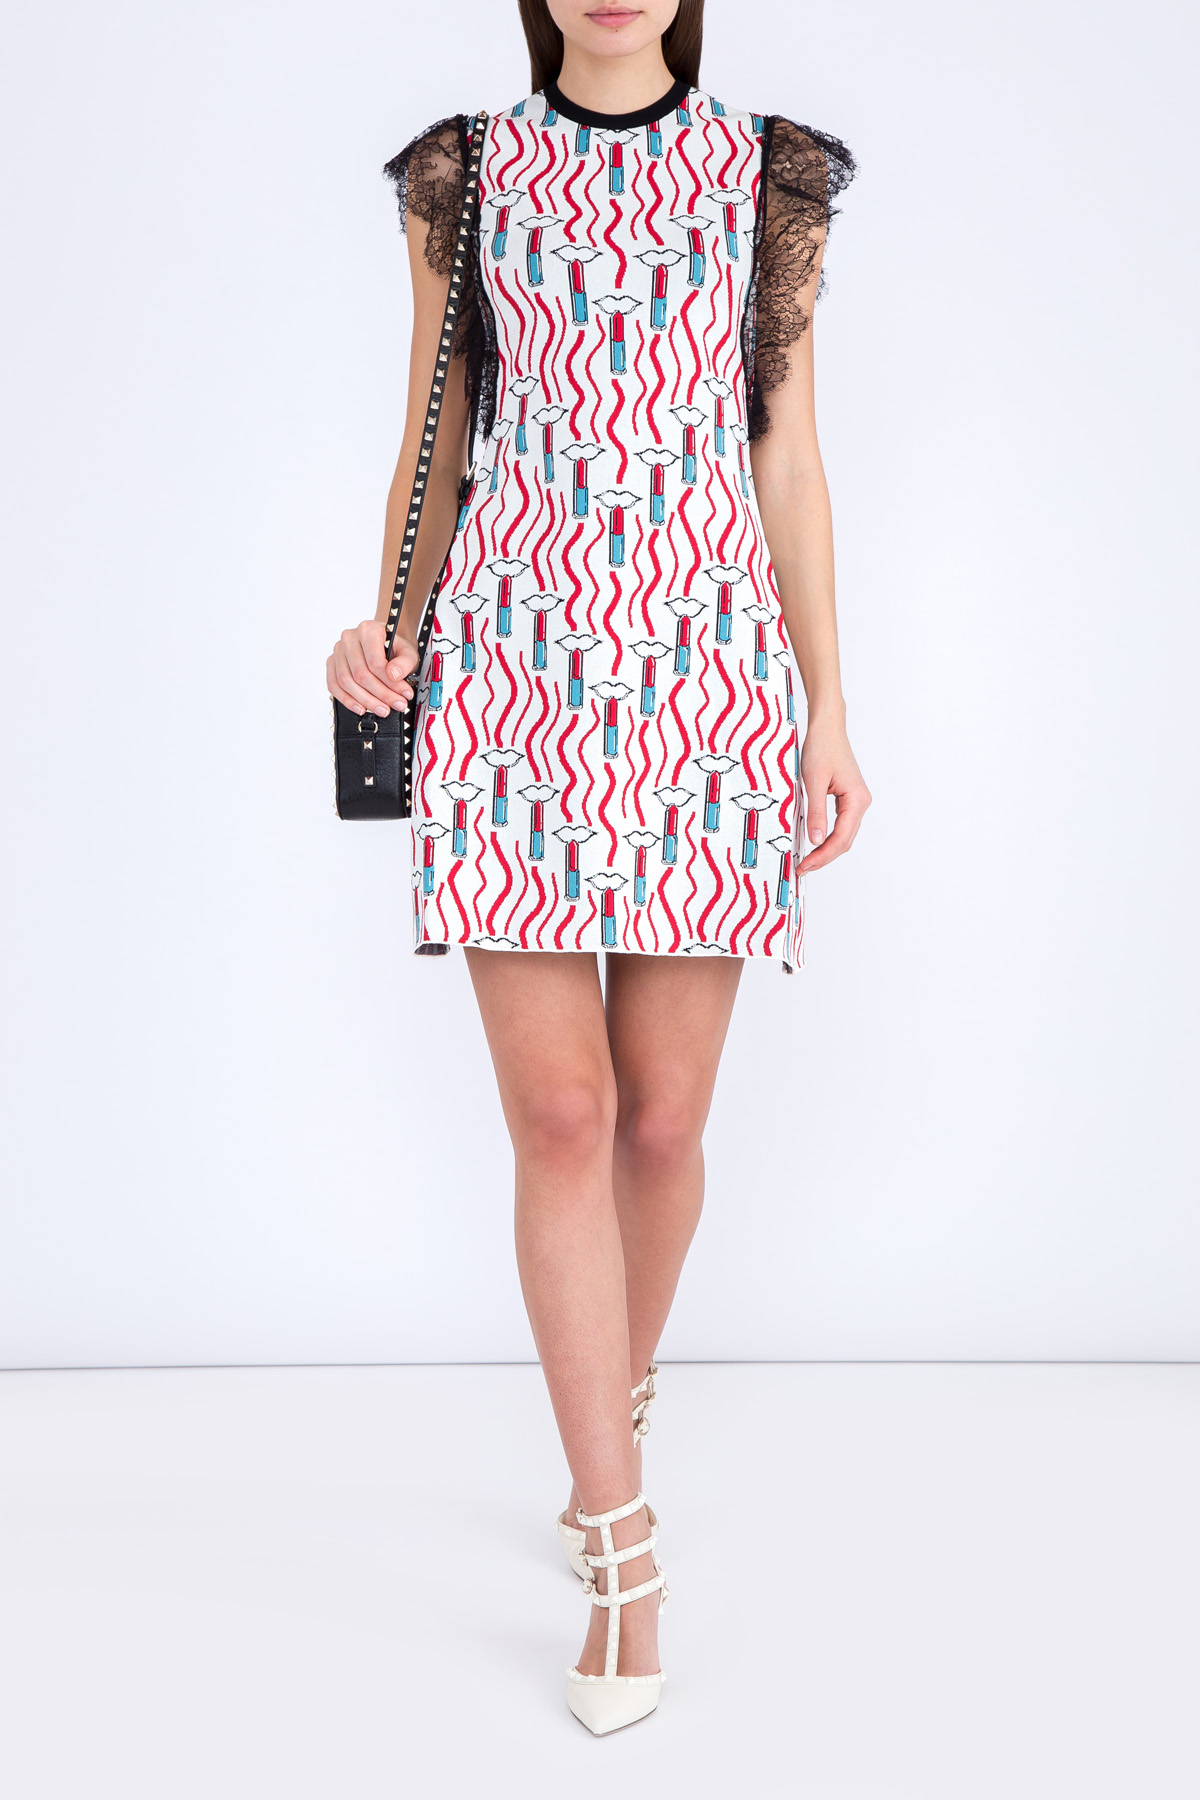 Платье в стиле спортшик с контрастным принтом и рукавами из кружева VALENTINO, цвет мульти, размер 42 - фото 2